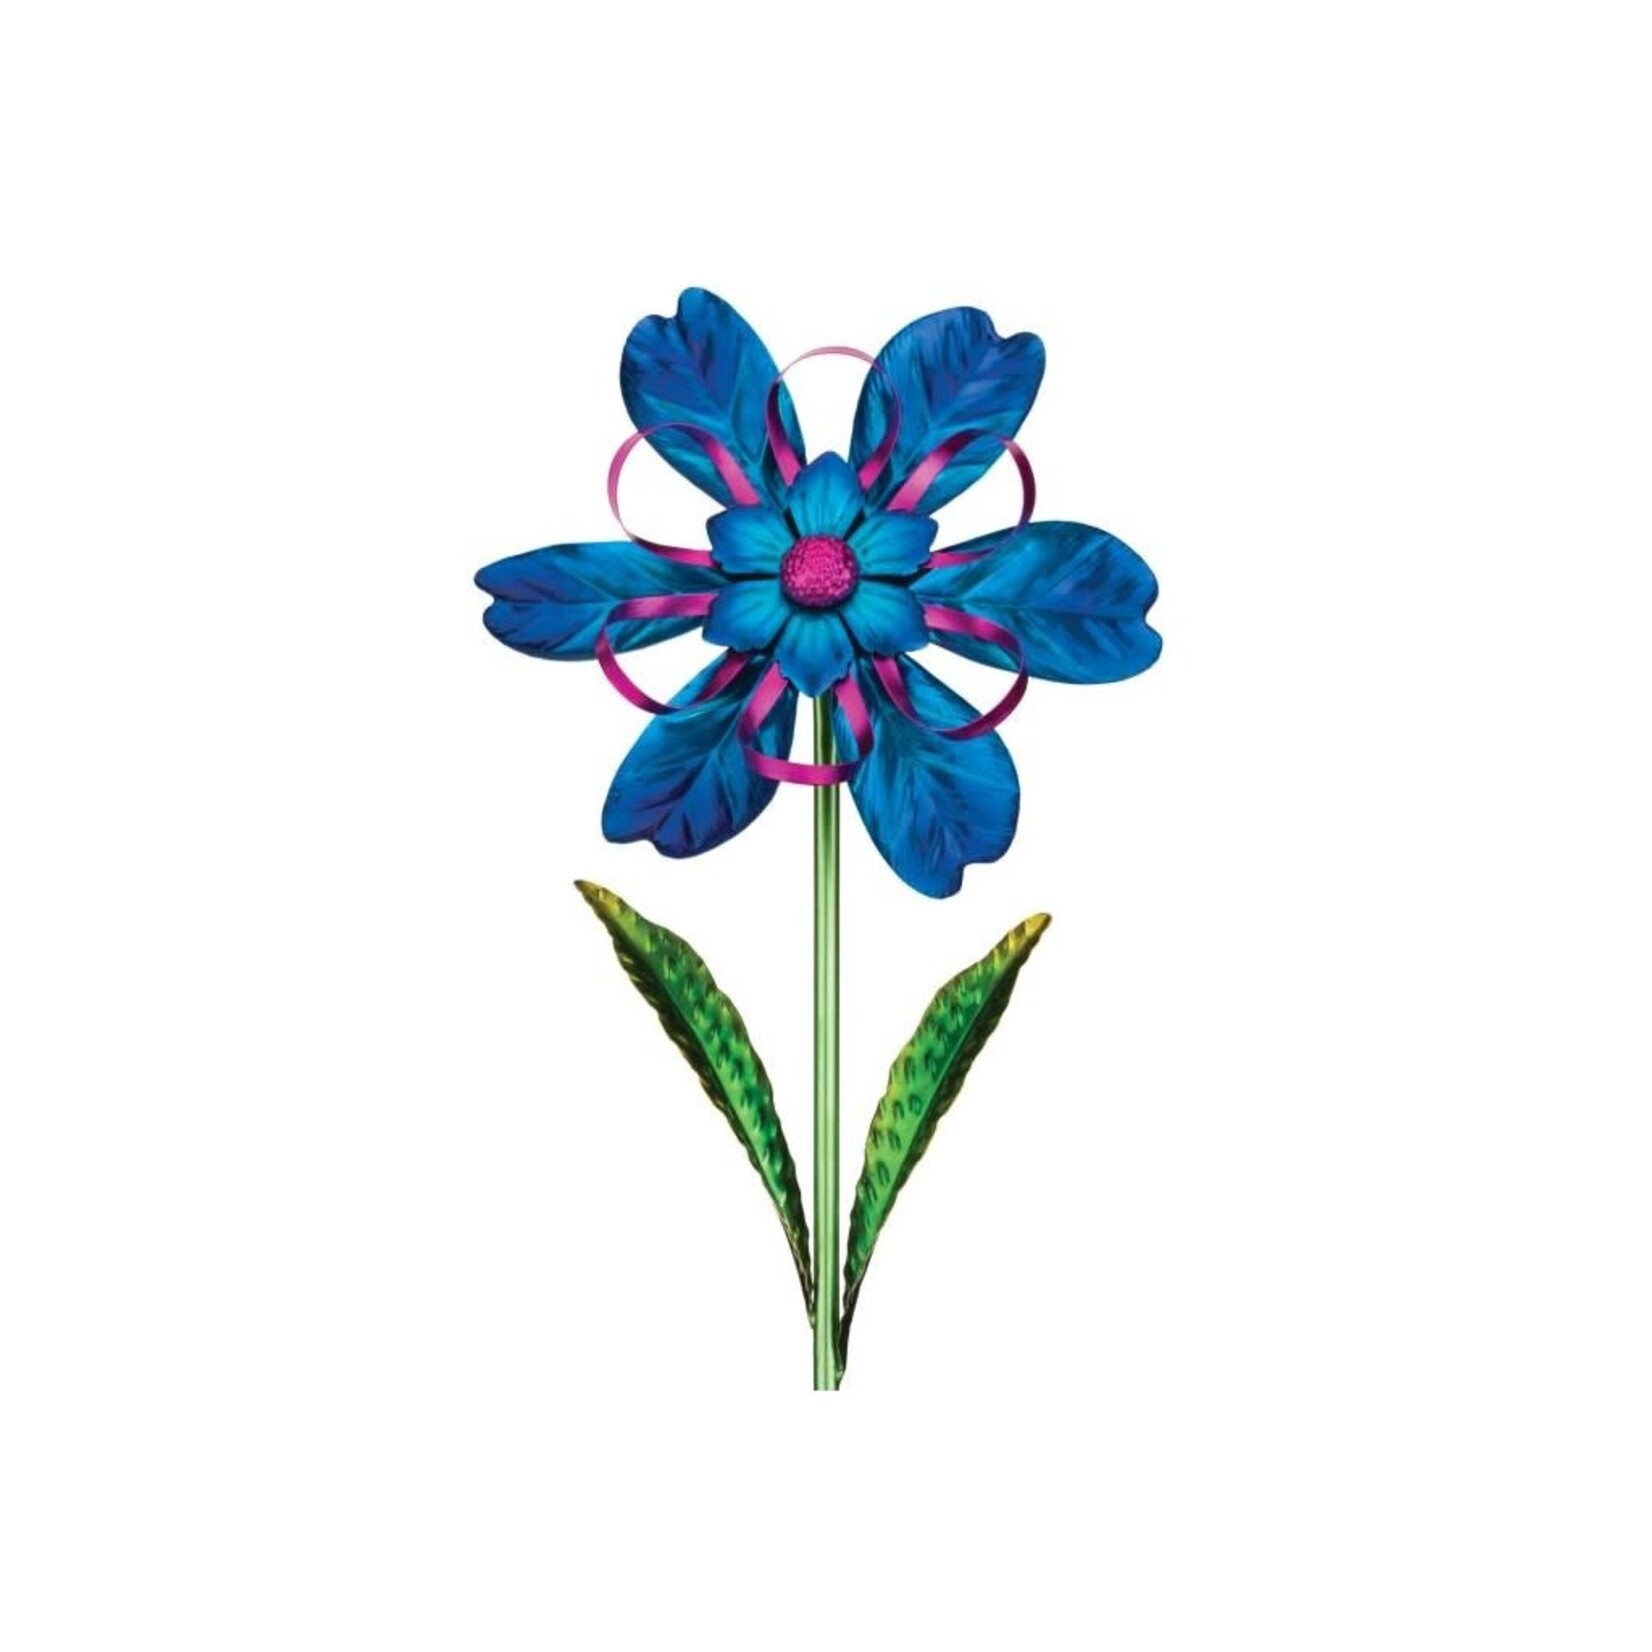 Ribbon Flower Spinner Stake - Blue